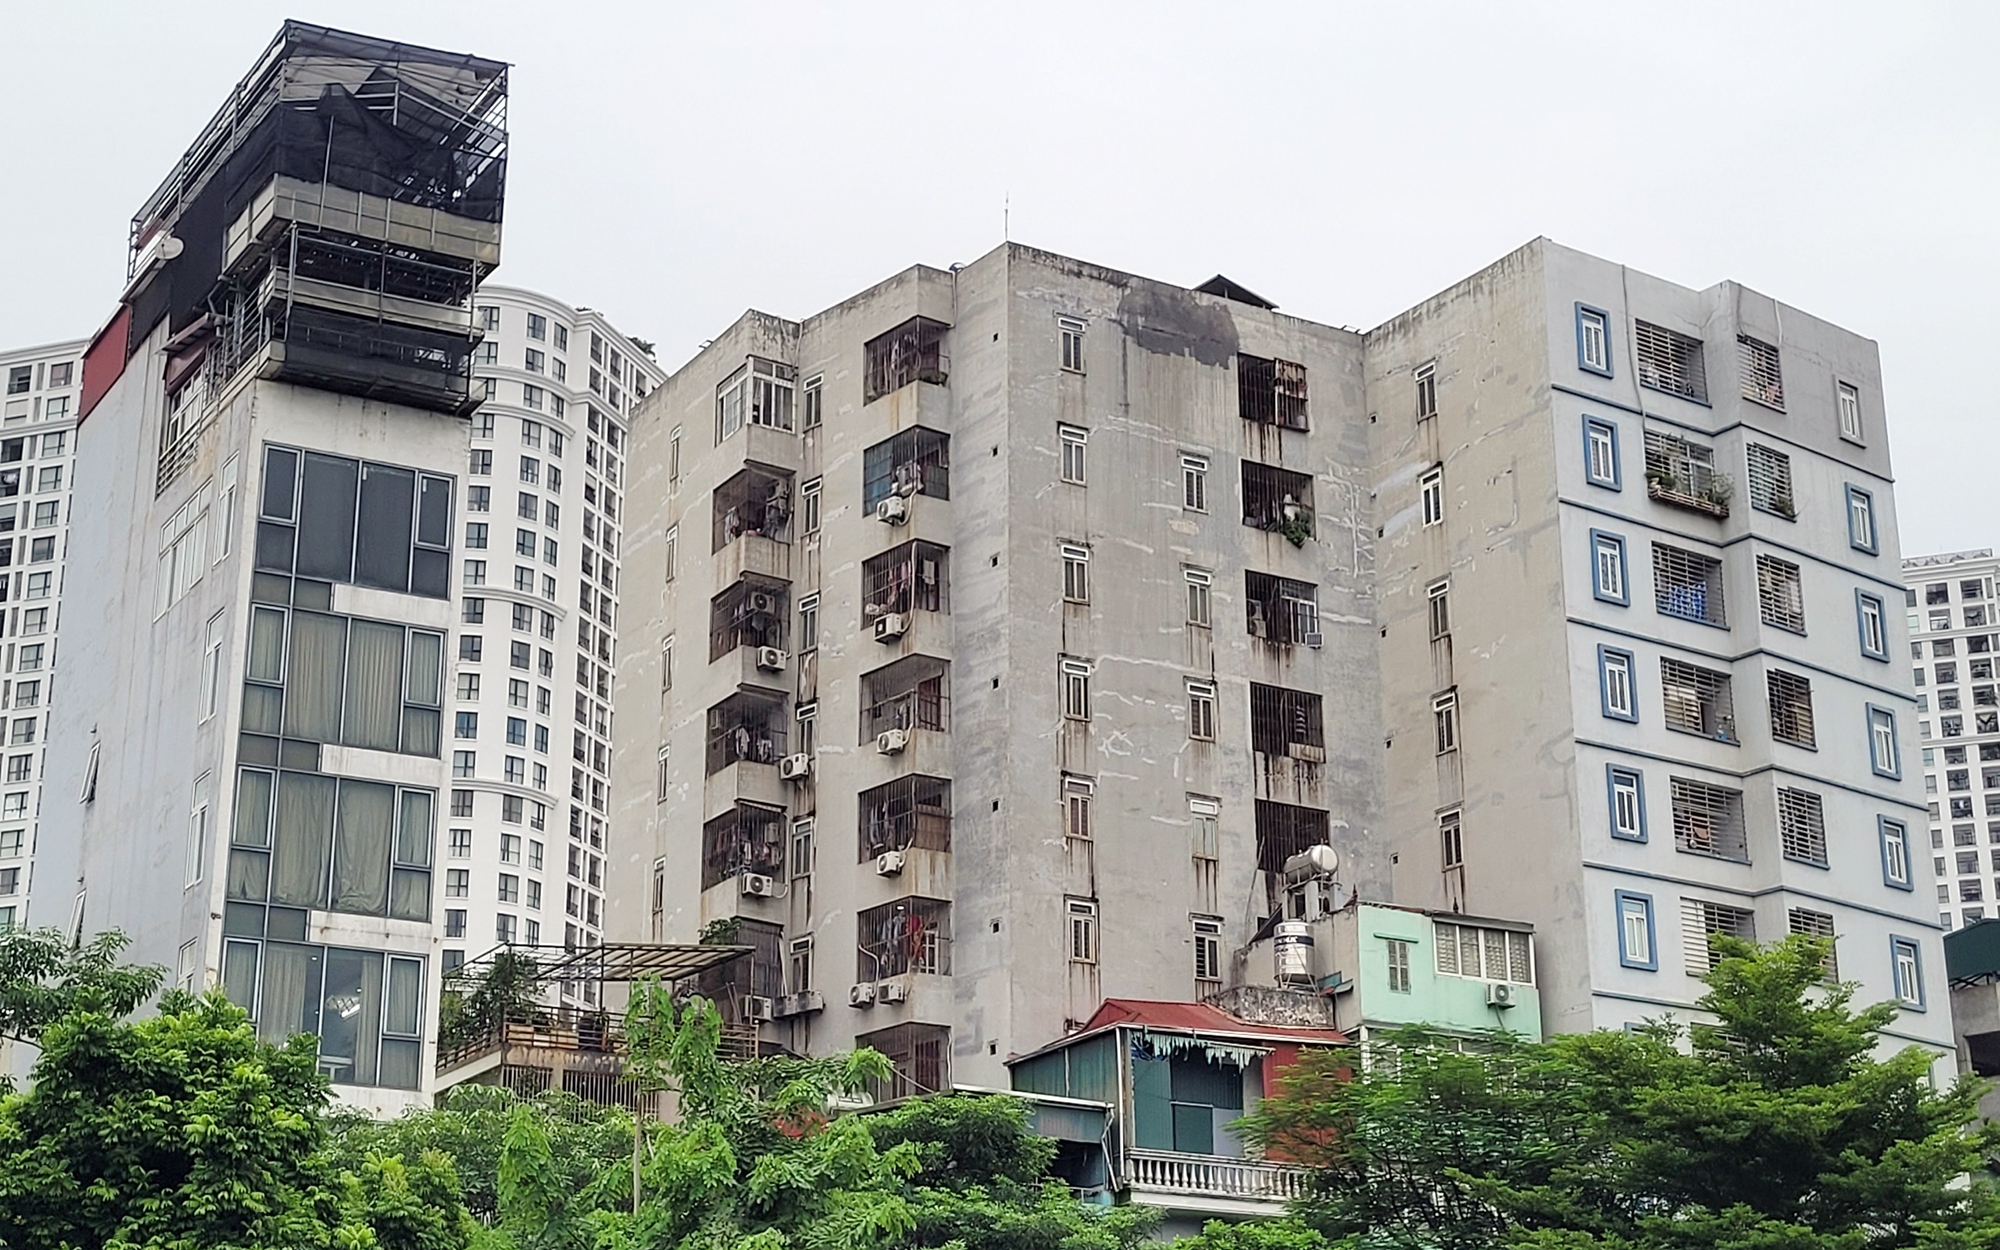 Hà Nội yêu cầu rà soát nhà ở nhiều tầng, nhiều căn hộ, xử lý dứt điểm công trình vi phạm trật tự xây dựng